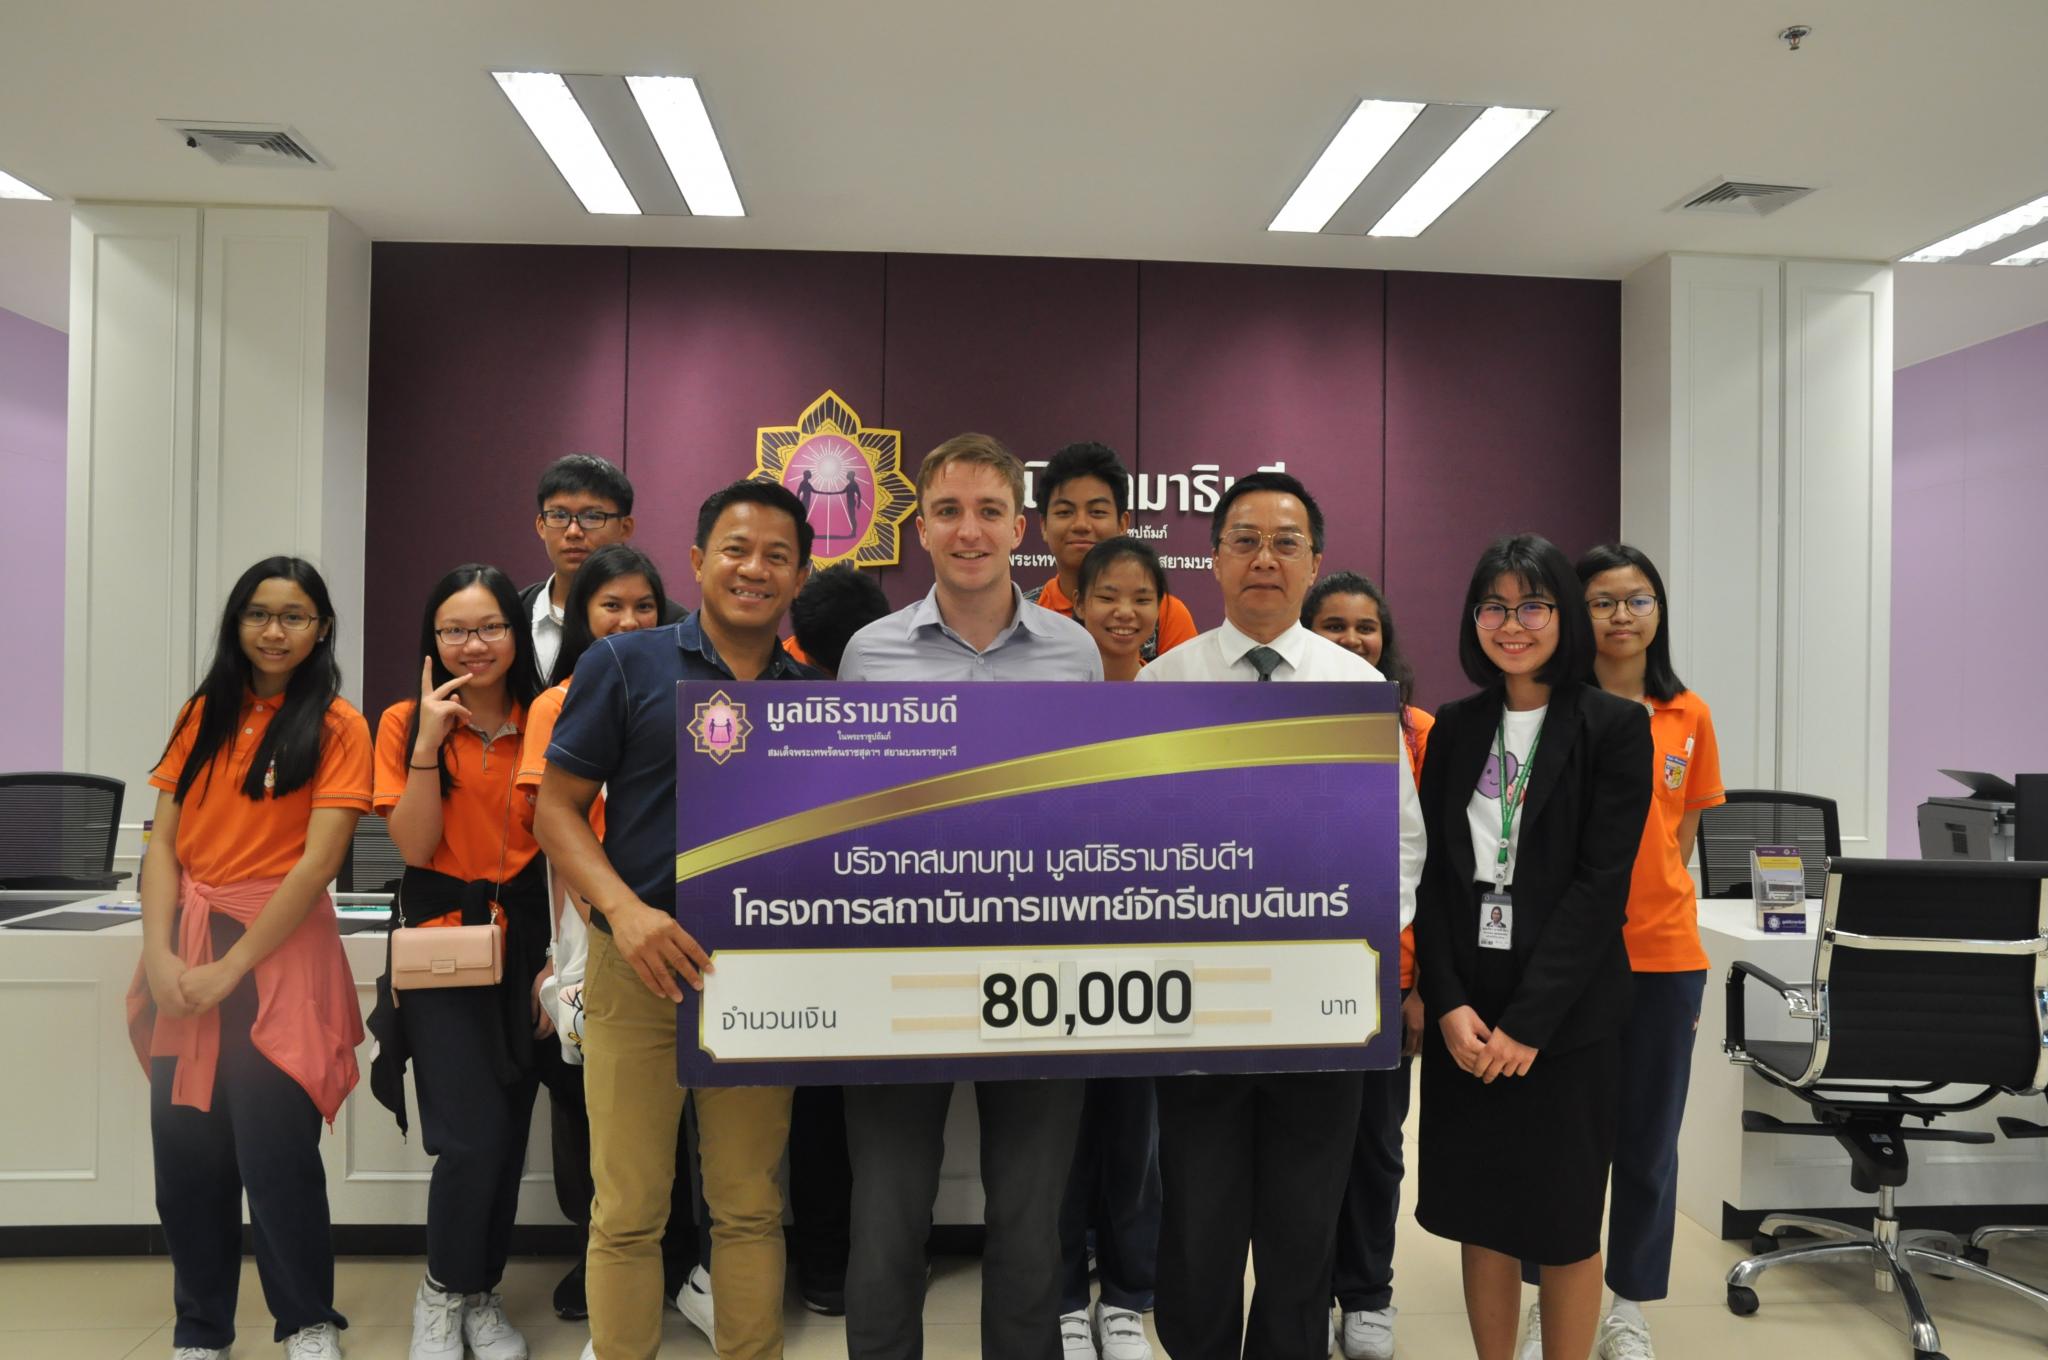 โรงเรียนนานาชาติไทย-สิงคโปร์ บริจาคเงินสมทบทุนโครงการสถาบันการแพทย์จักรีนฤบดินทร์